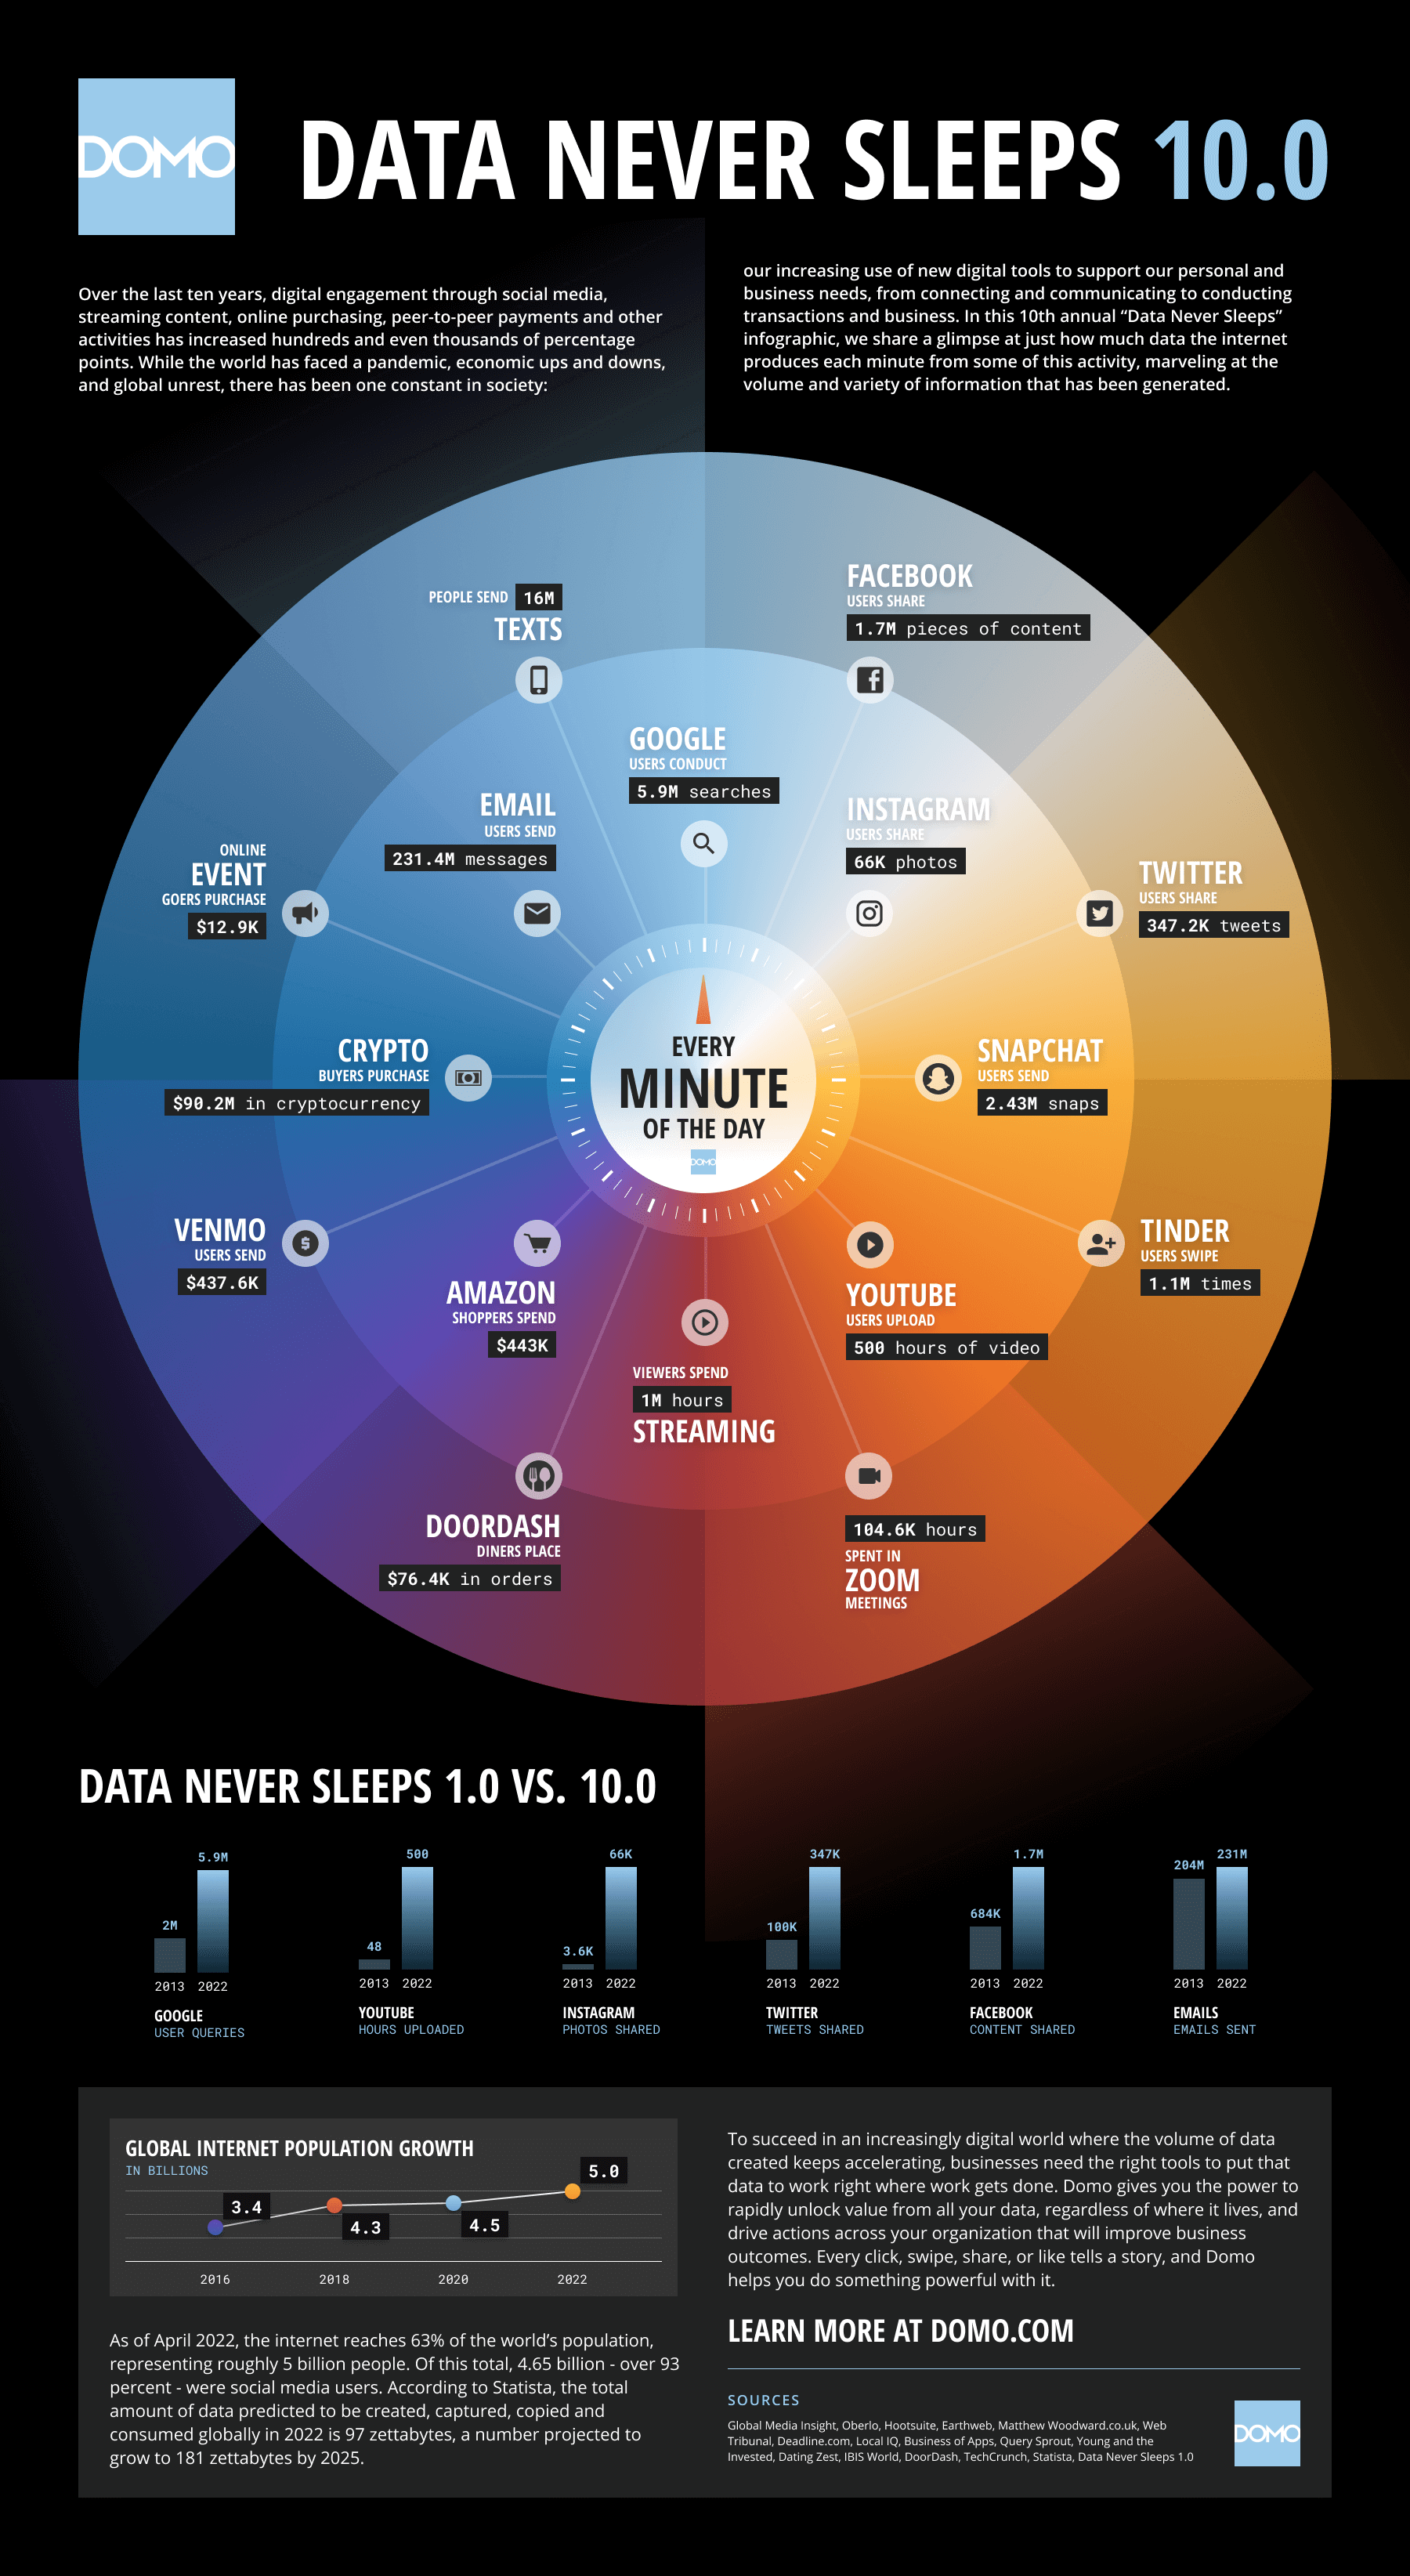 Infográfico produzido pela Domo, chamado “Data Never Sleeps” (ou “Dados Nunca Dormem”, em português), e traz pontos relevantes sobre o que acontece a cada minuto na internet.